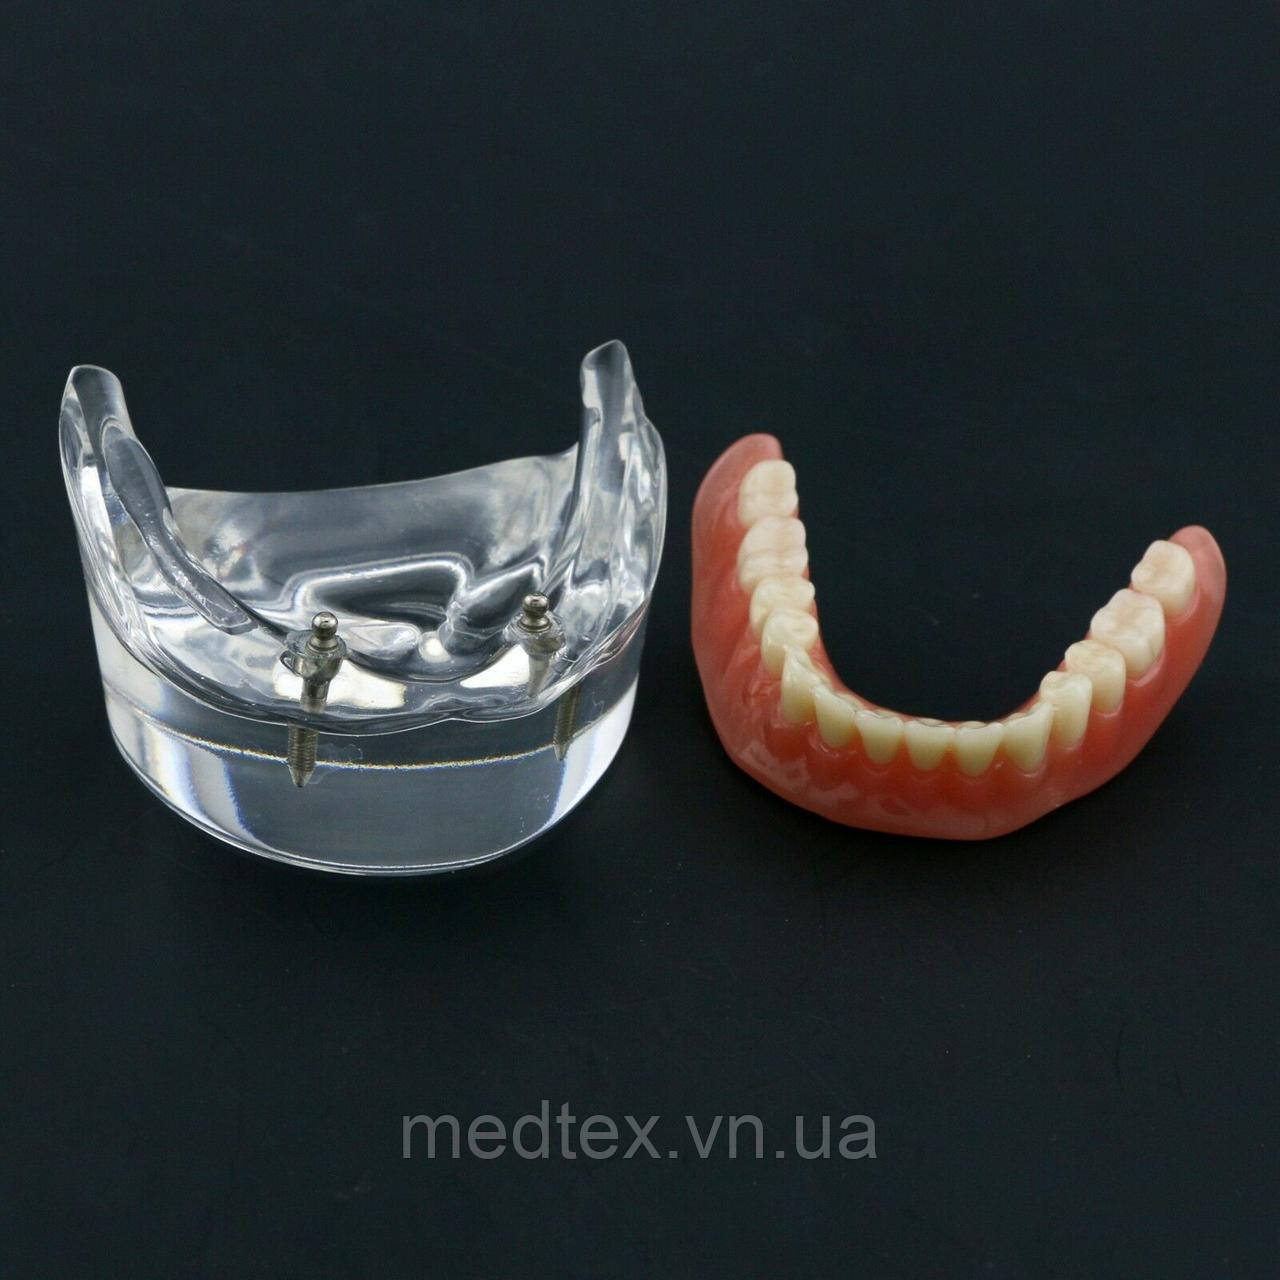 Демонстраційна модель зубів.